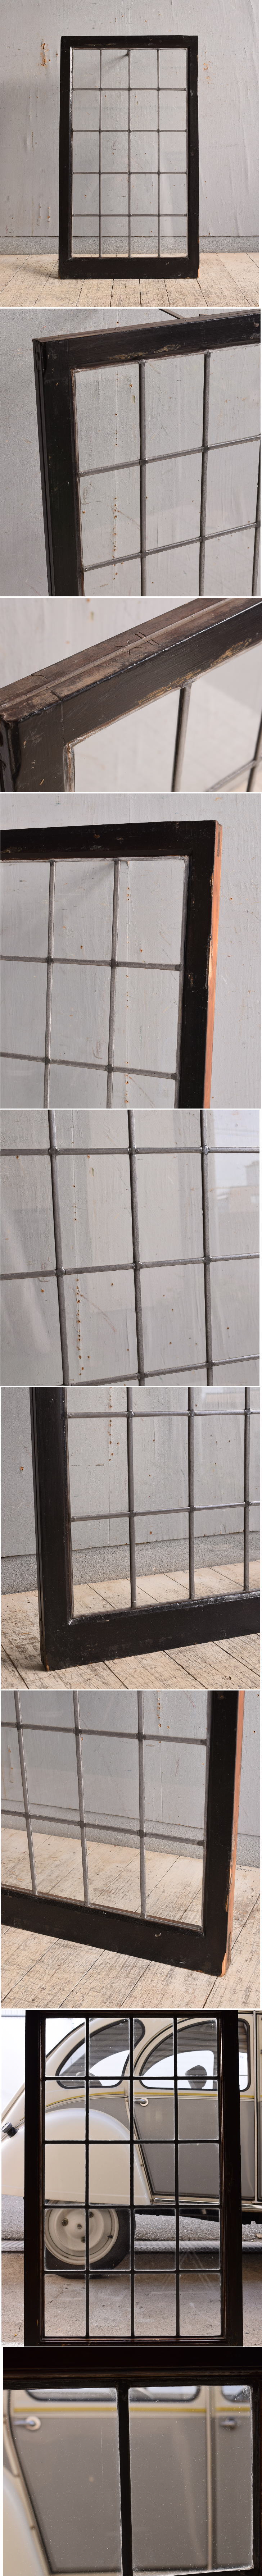 イギリス アンティーク 窓 無色透明 9748